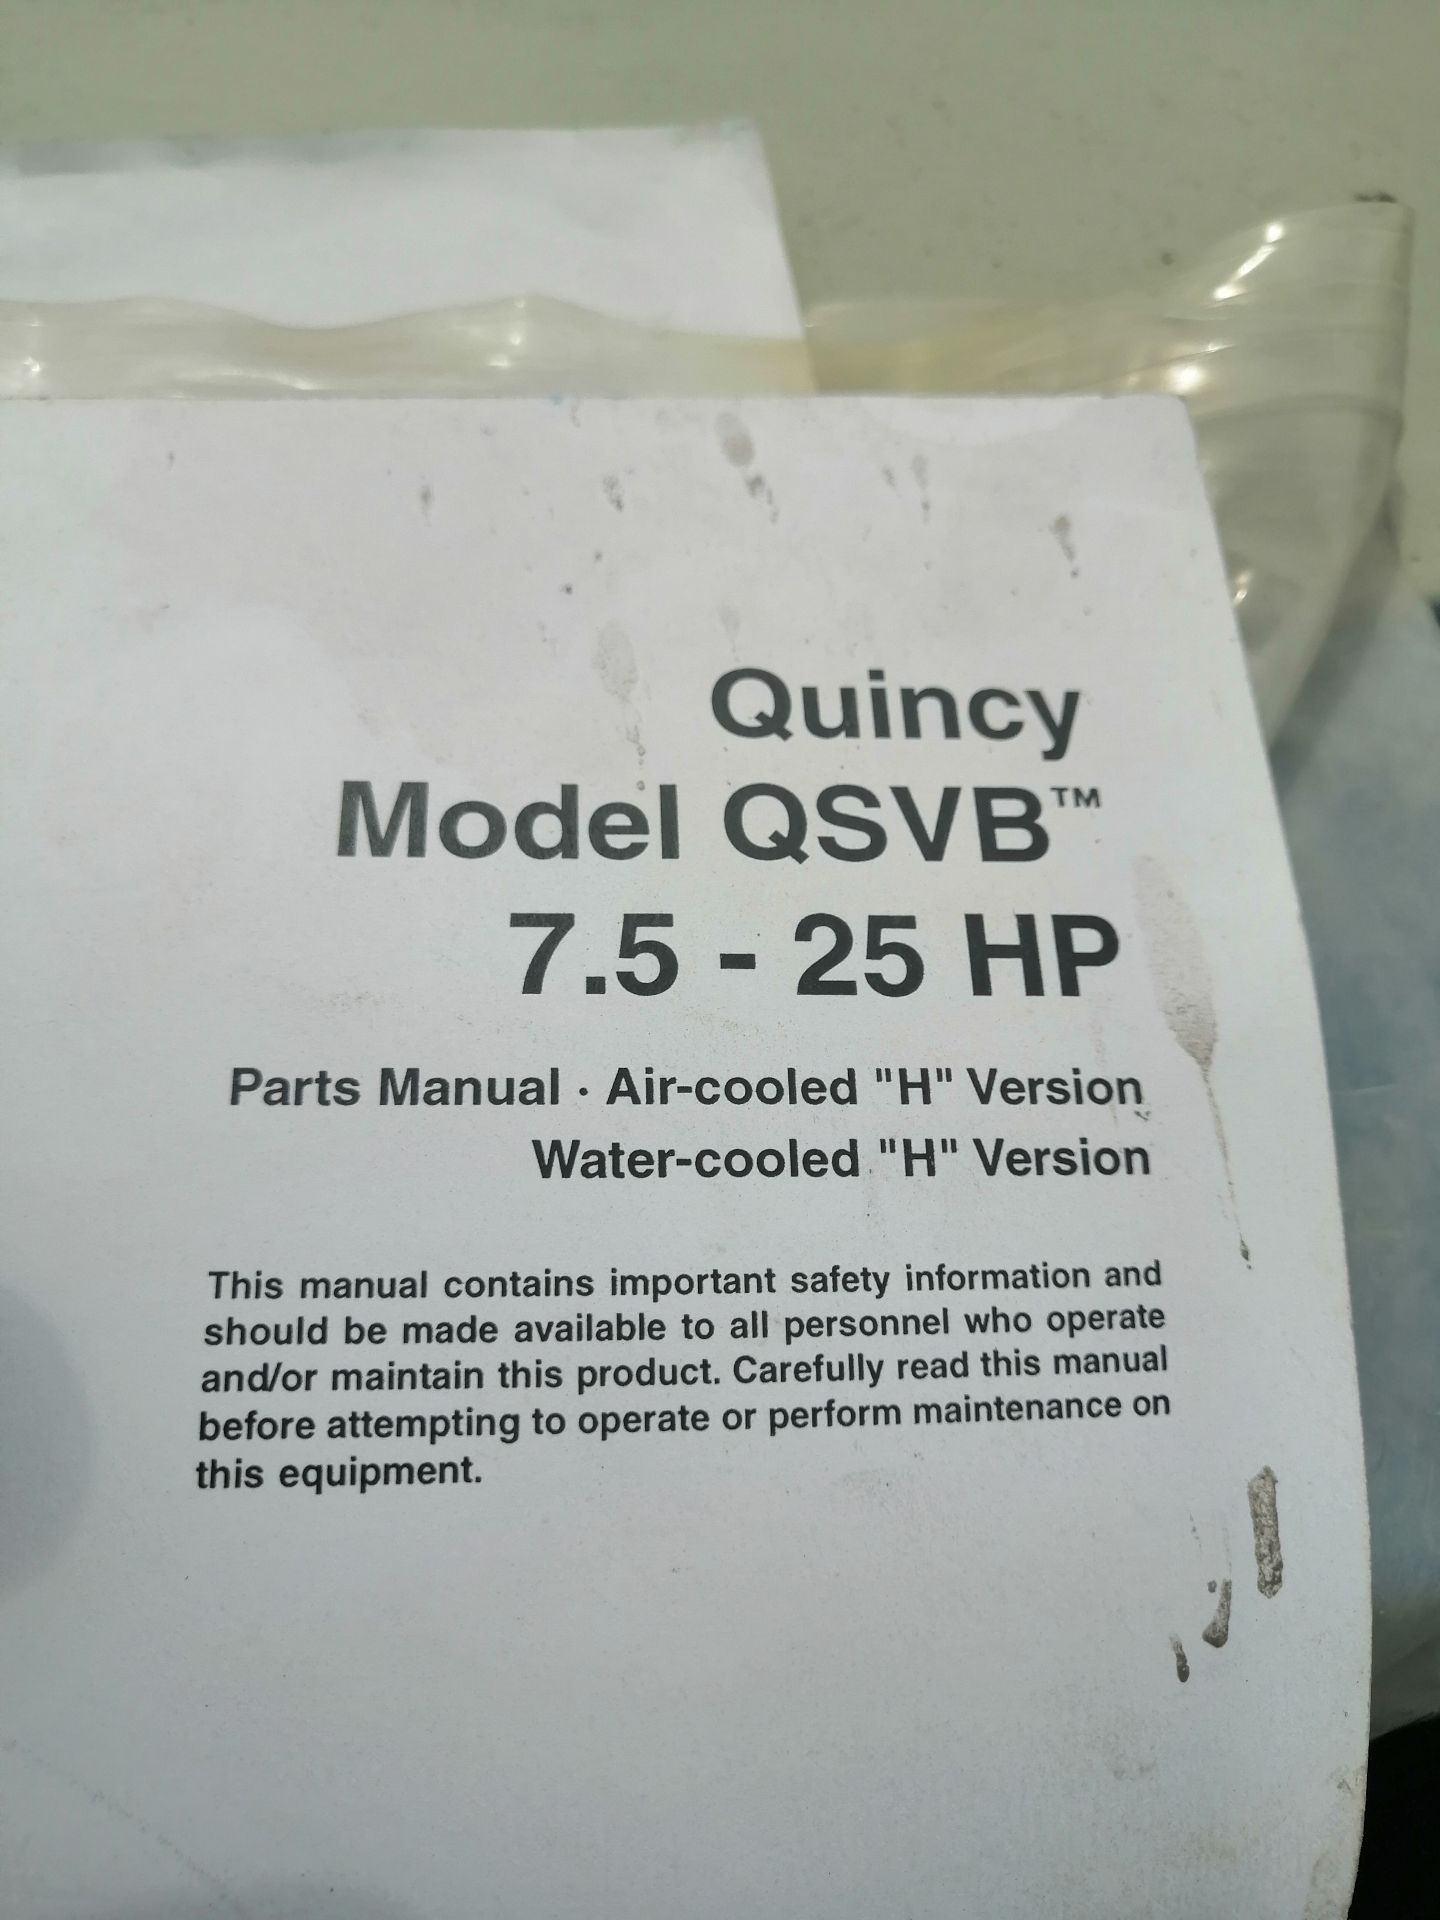 Quincy vacuum pumps Model QSVB 7.5 - 25 HP - Image 2 of 21